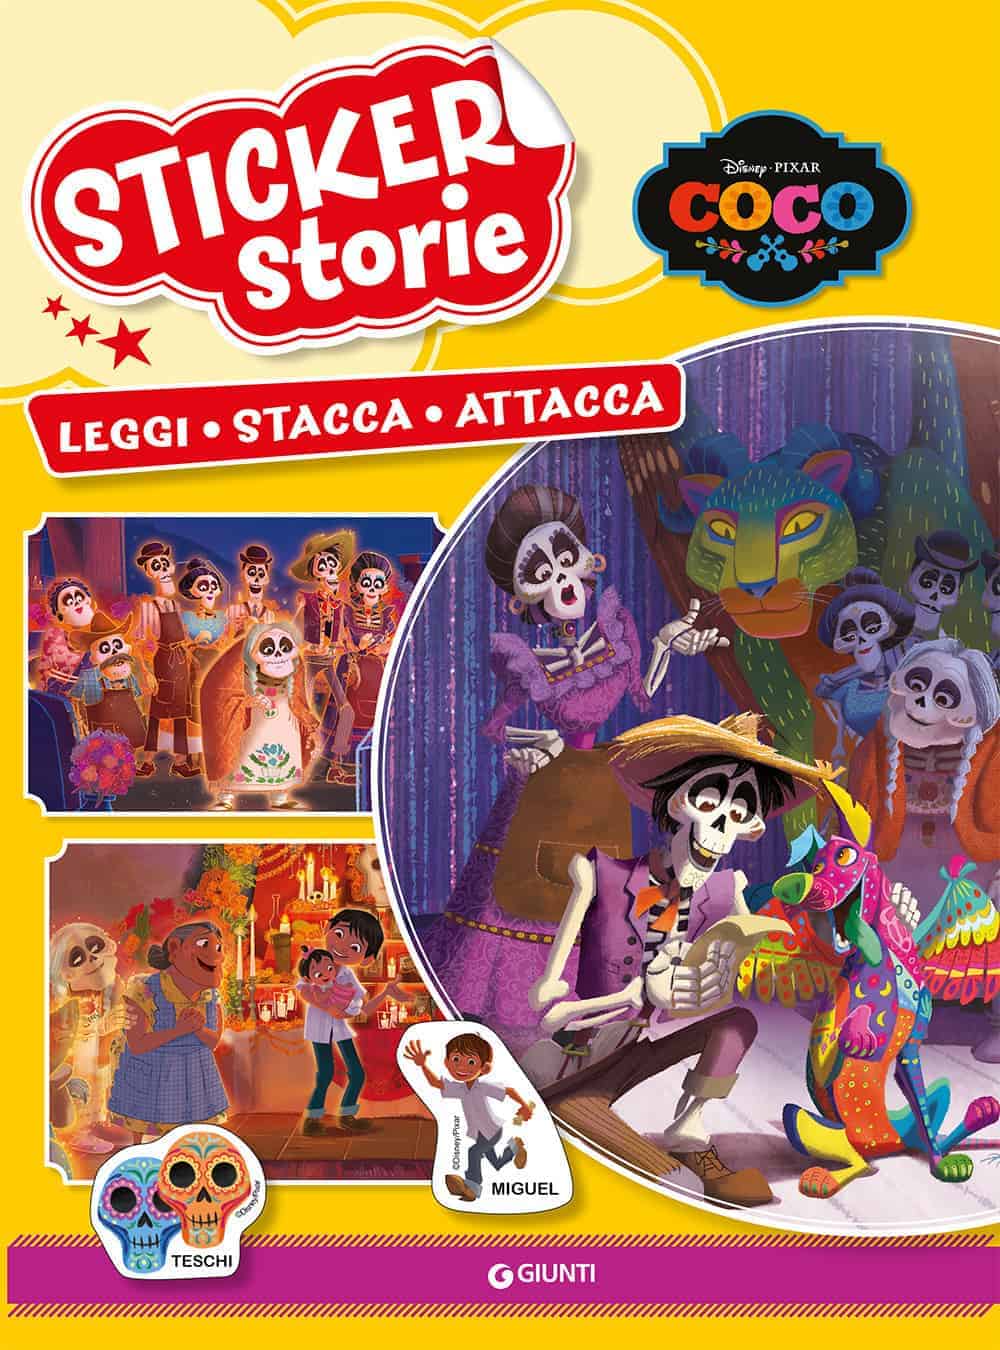 Sticker Storie - Leggi, stacca, attacca: Coco